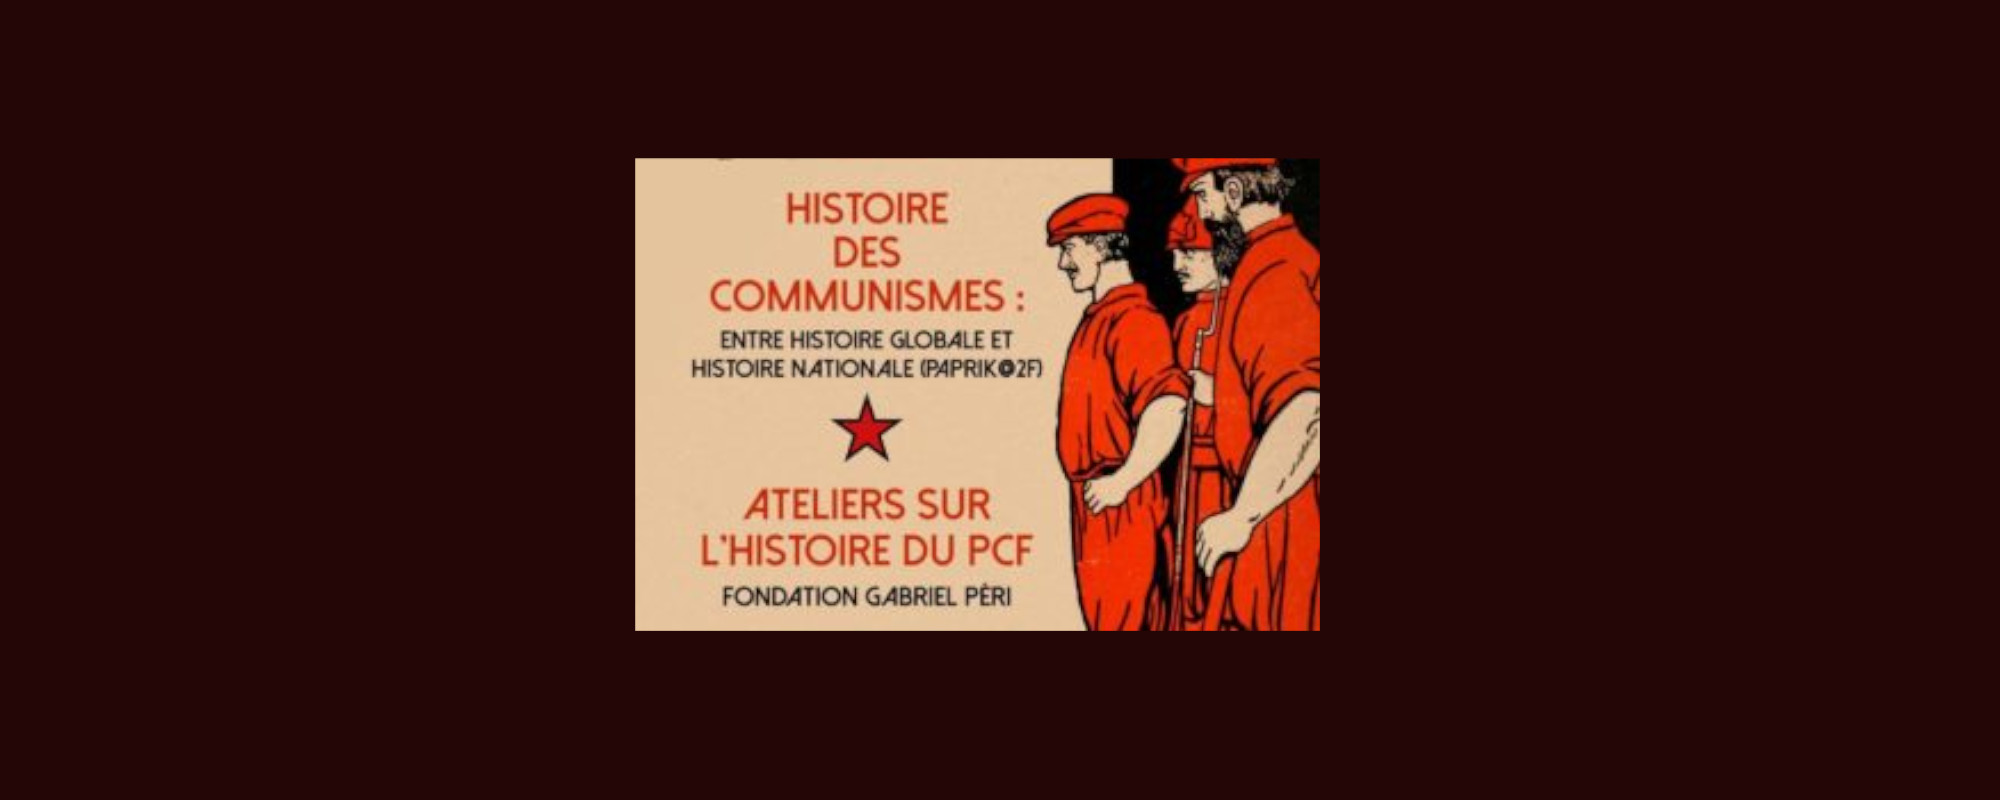 À propos dʼABRICO (Archives, brochures et informations communistes) et du Journal de Maurice Thorez